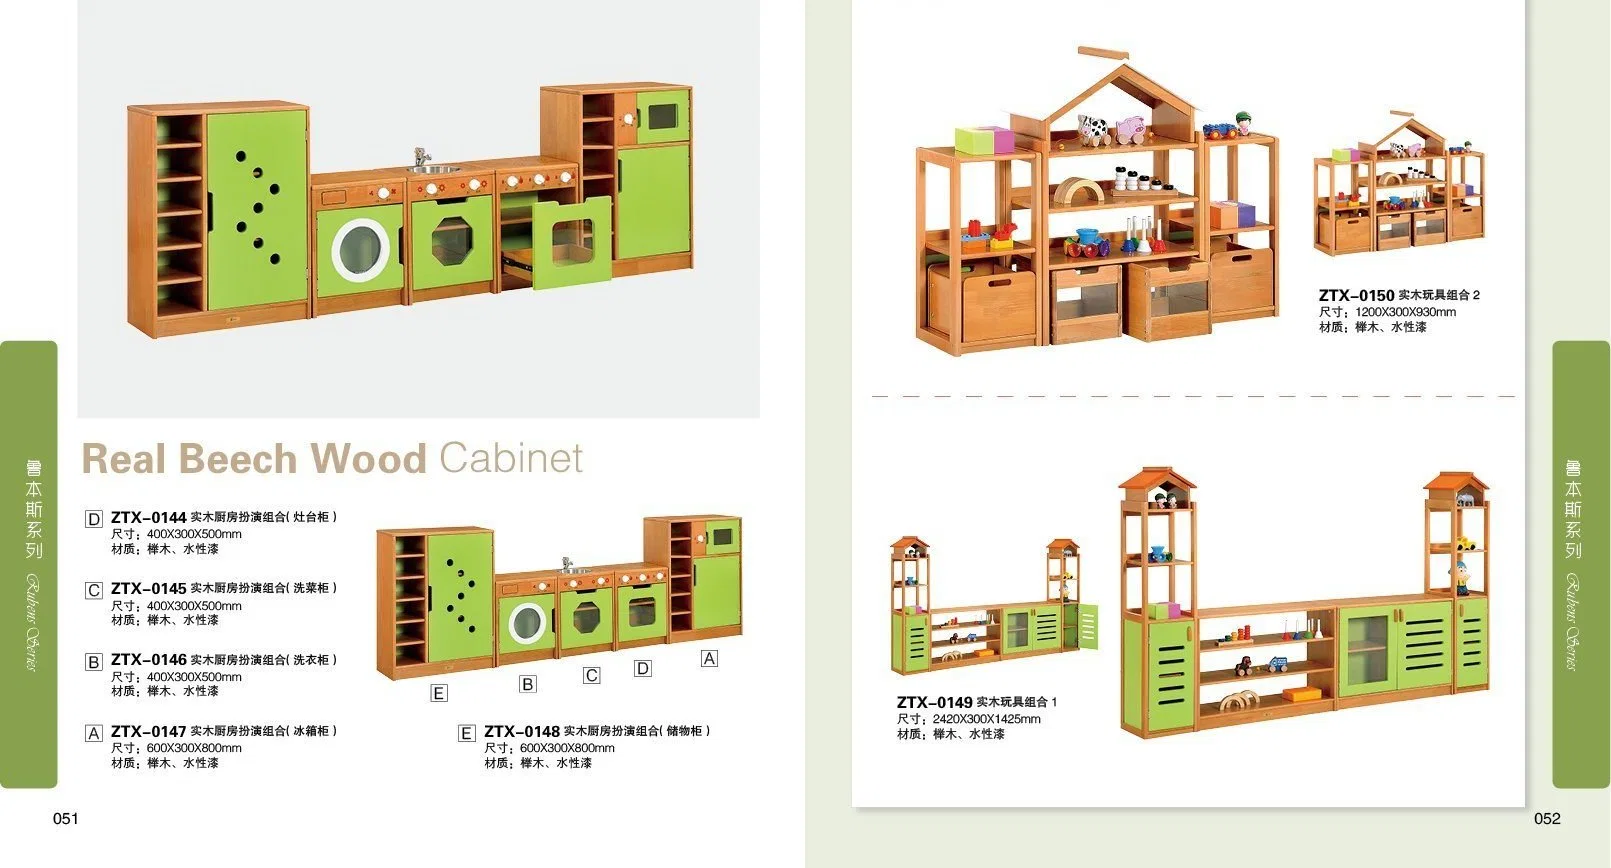 Детей просветительскую роль играют игрушки, деревянные кухонные Play для воспитателей детских садов и дошкольных учреждений, школьная мебель детские мебель спальня мебель